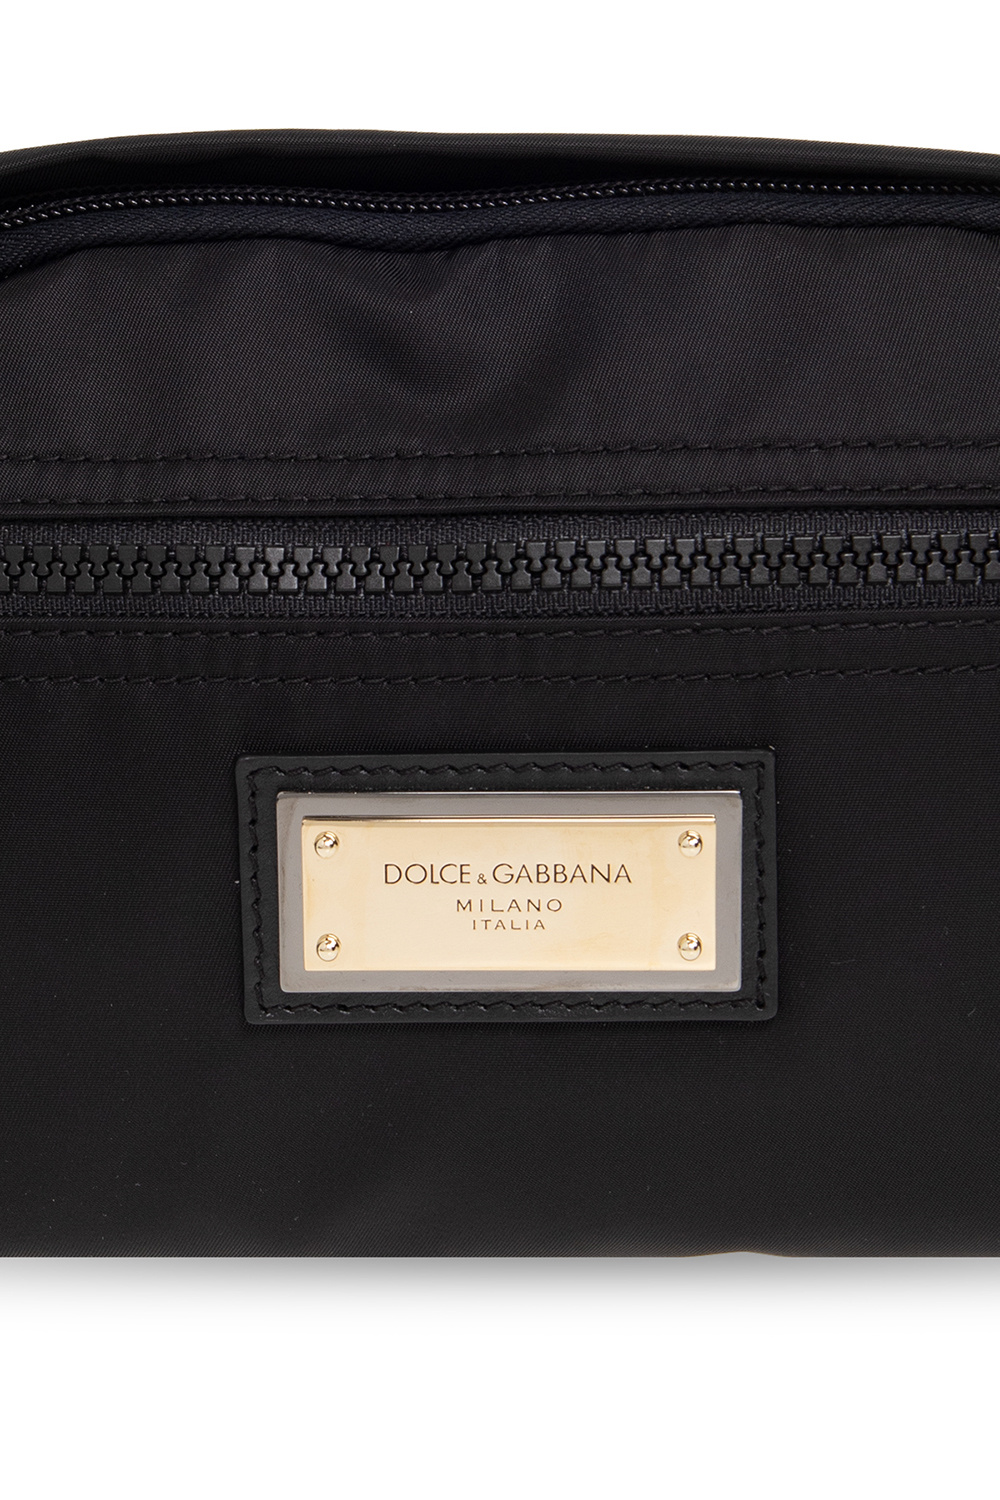 Dolce & Gabbana Dolce & Gabbana Bootcut Jeans for Men